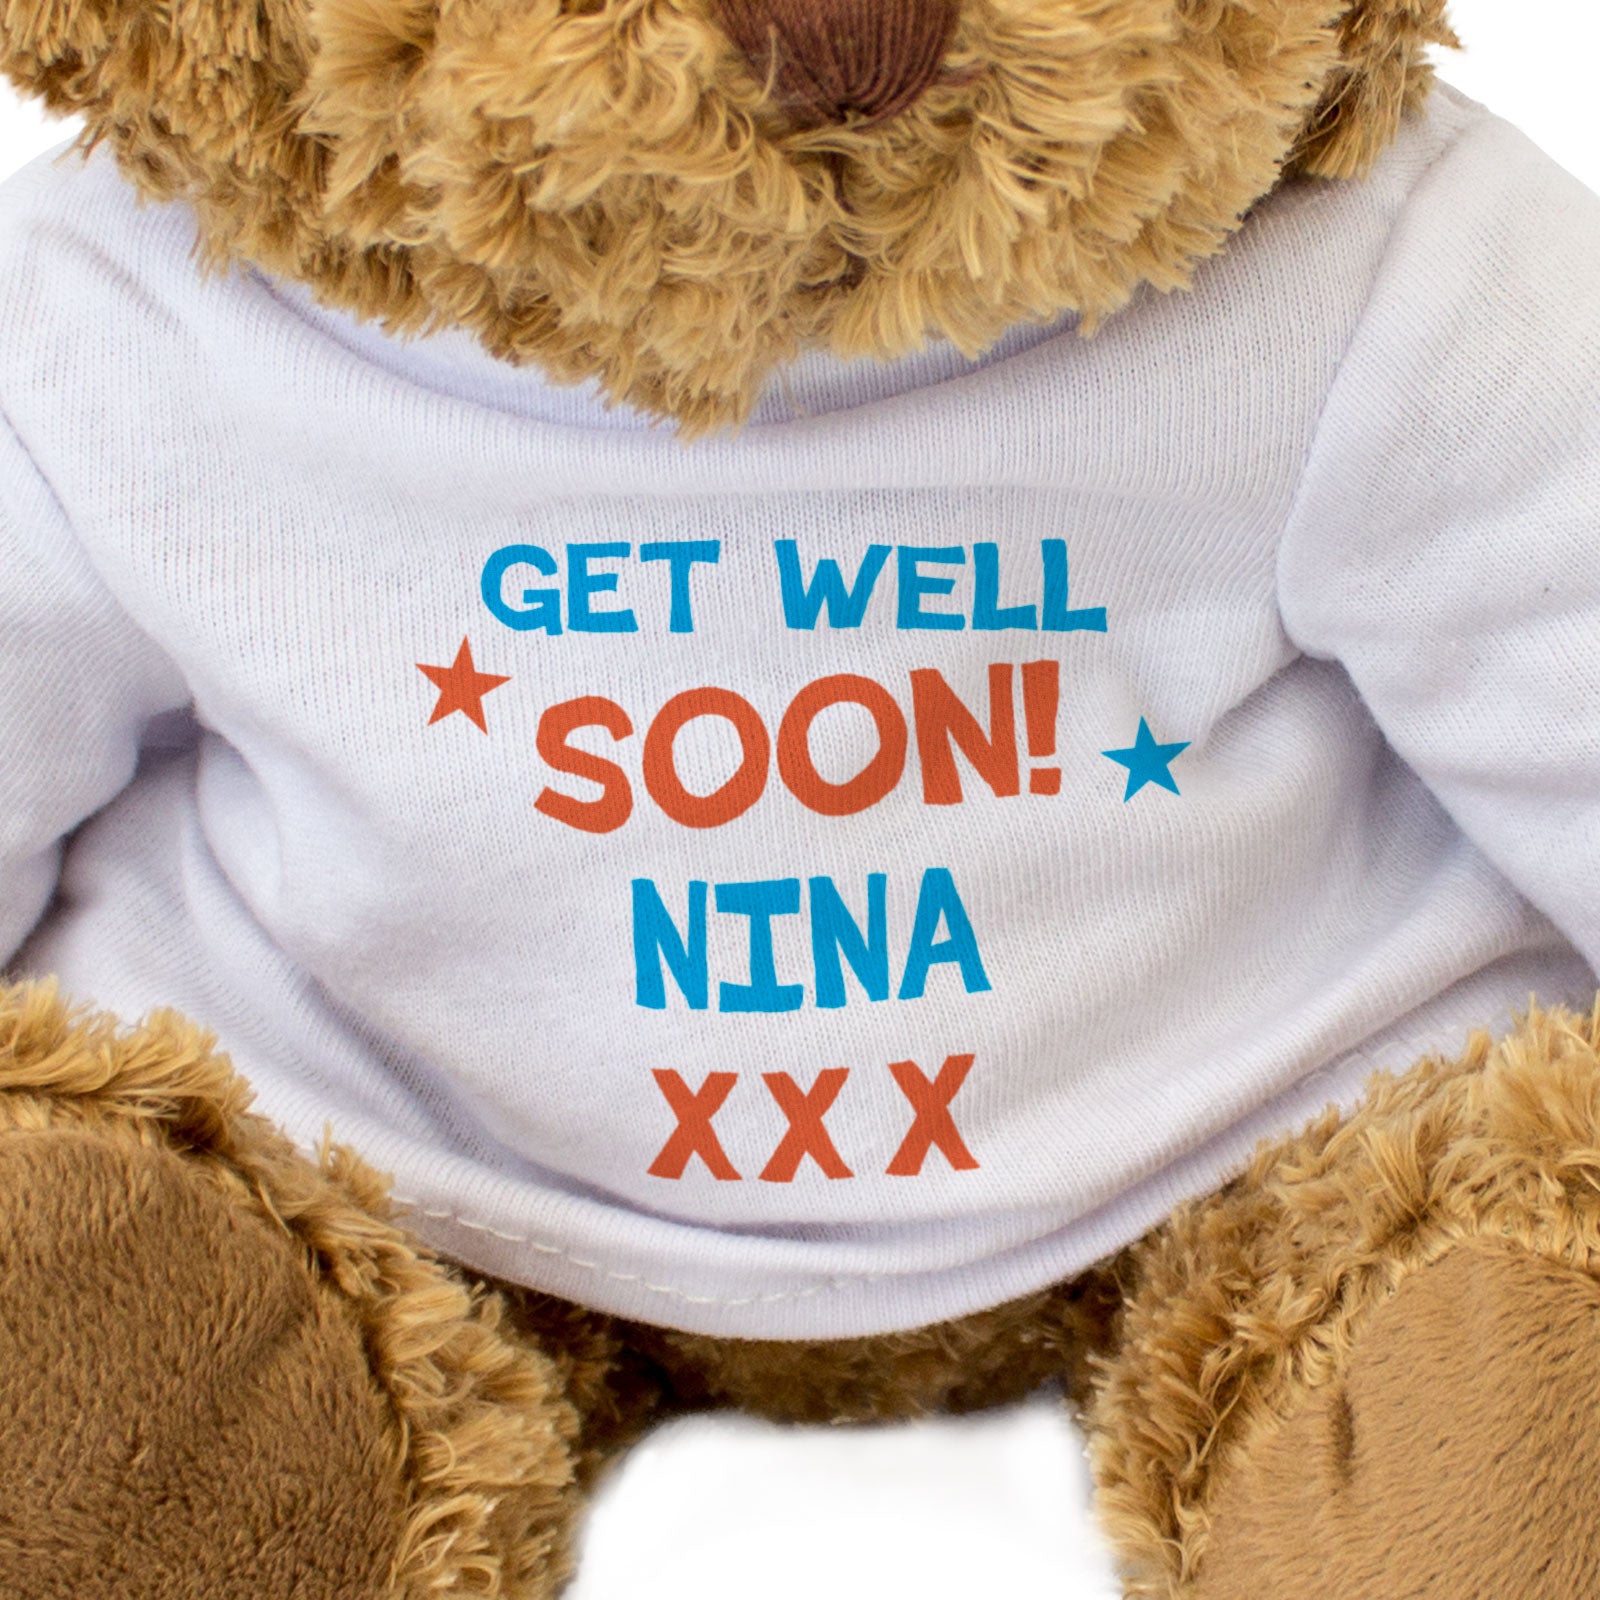 ღ Teddy / Get well soon! - by Nina ღ Picture #124389685